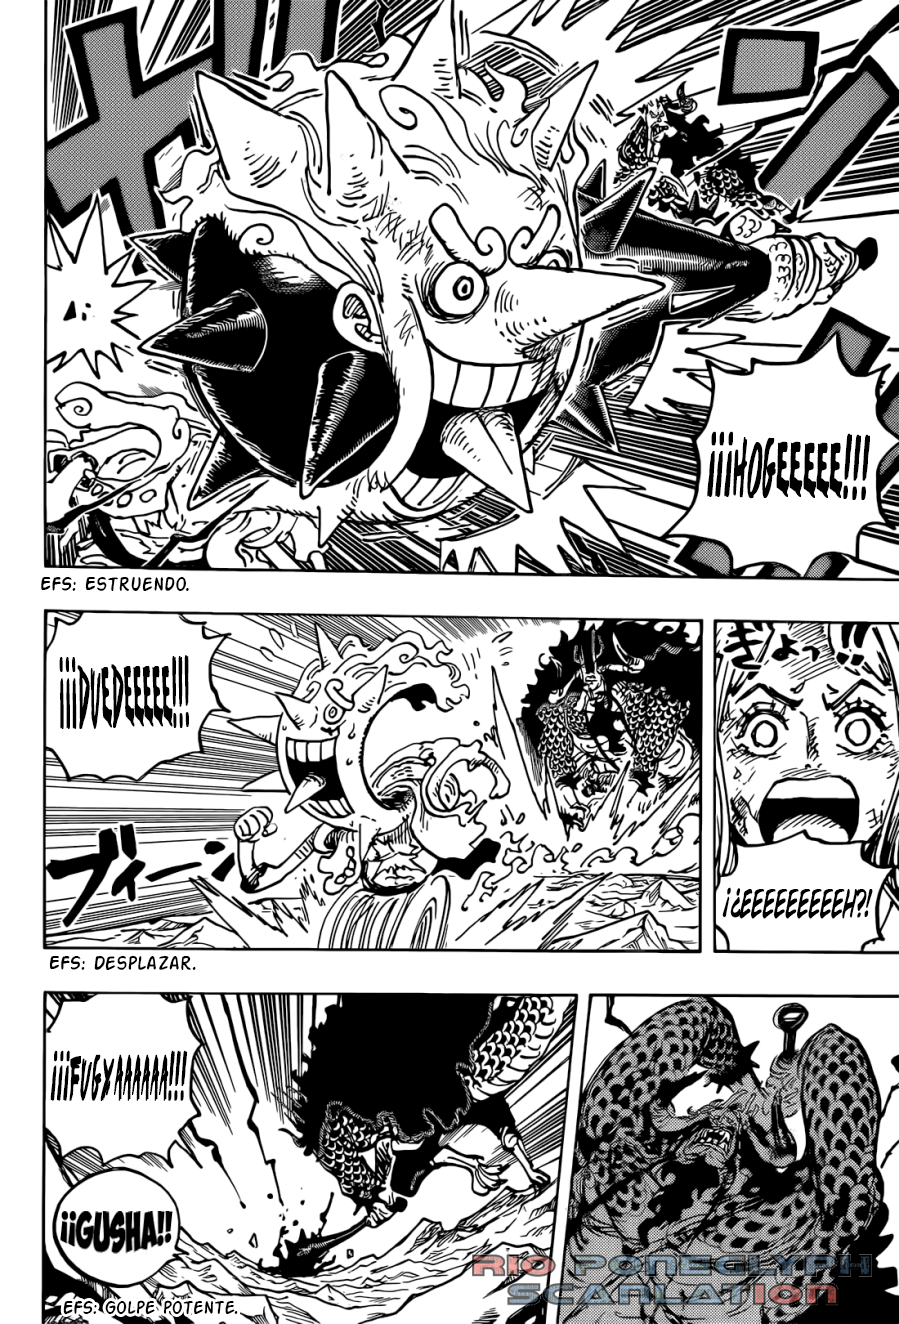 español - One Piece Manga 1045 [Español] [Rio Poneglyph Scans] TENGWhpT_o